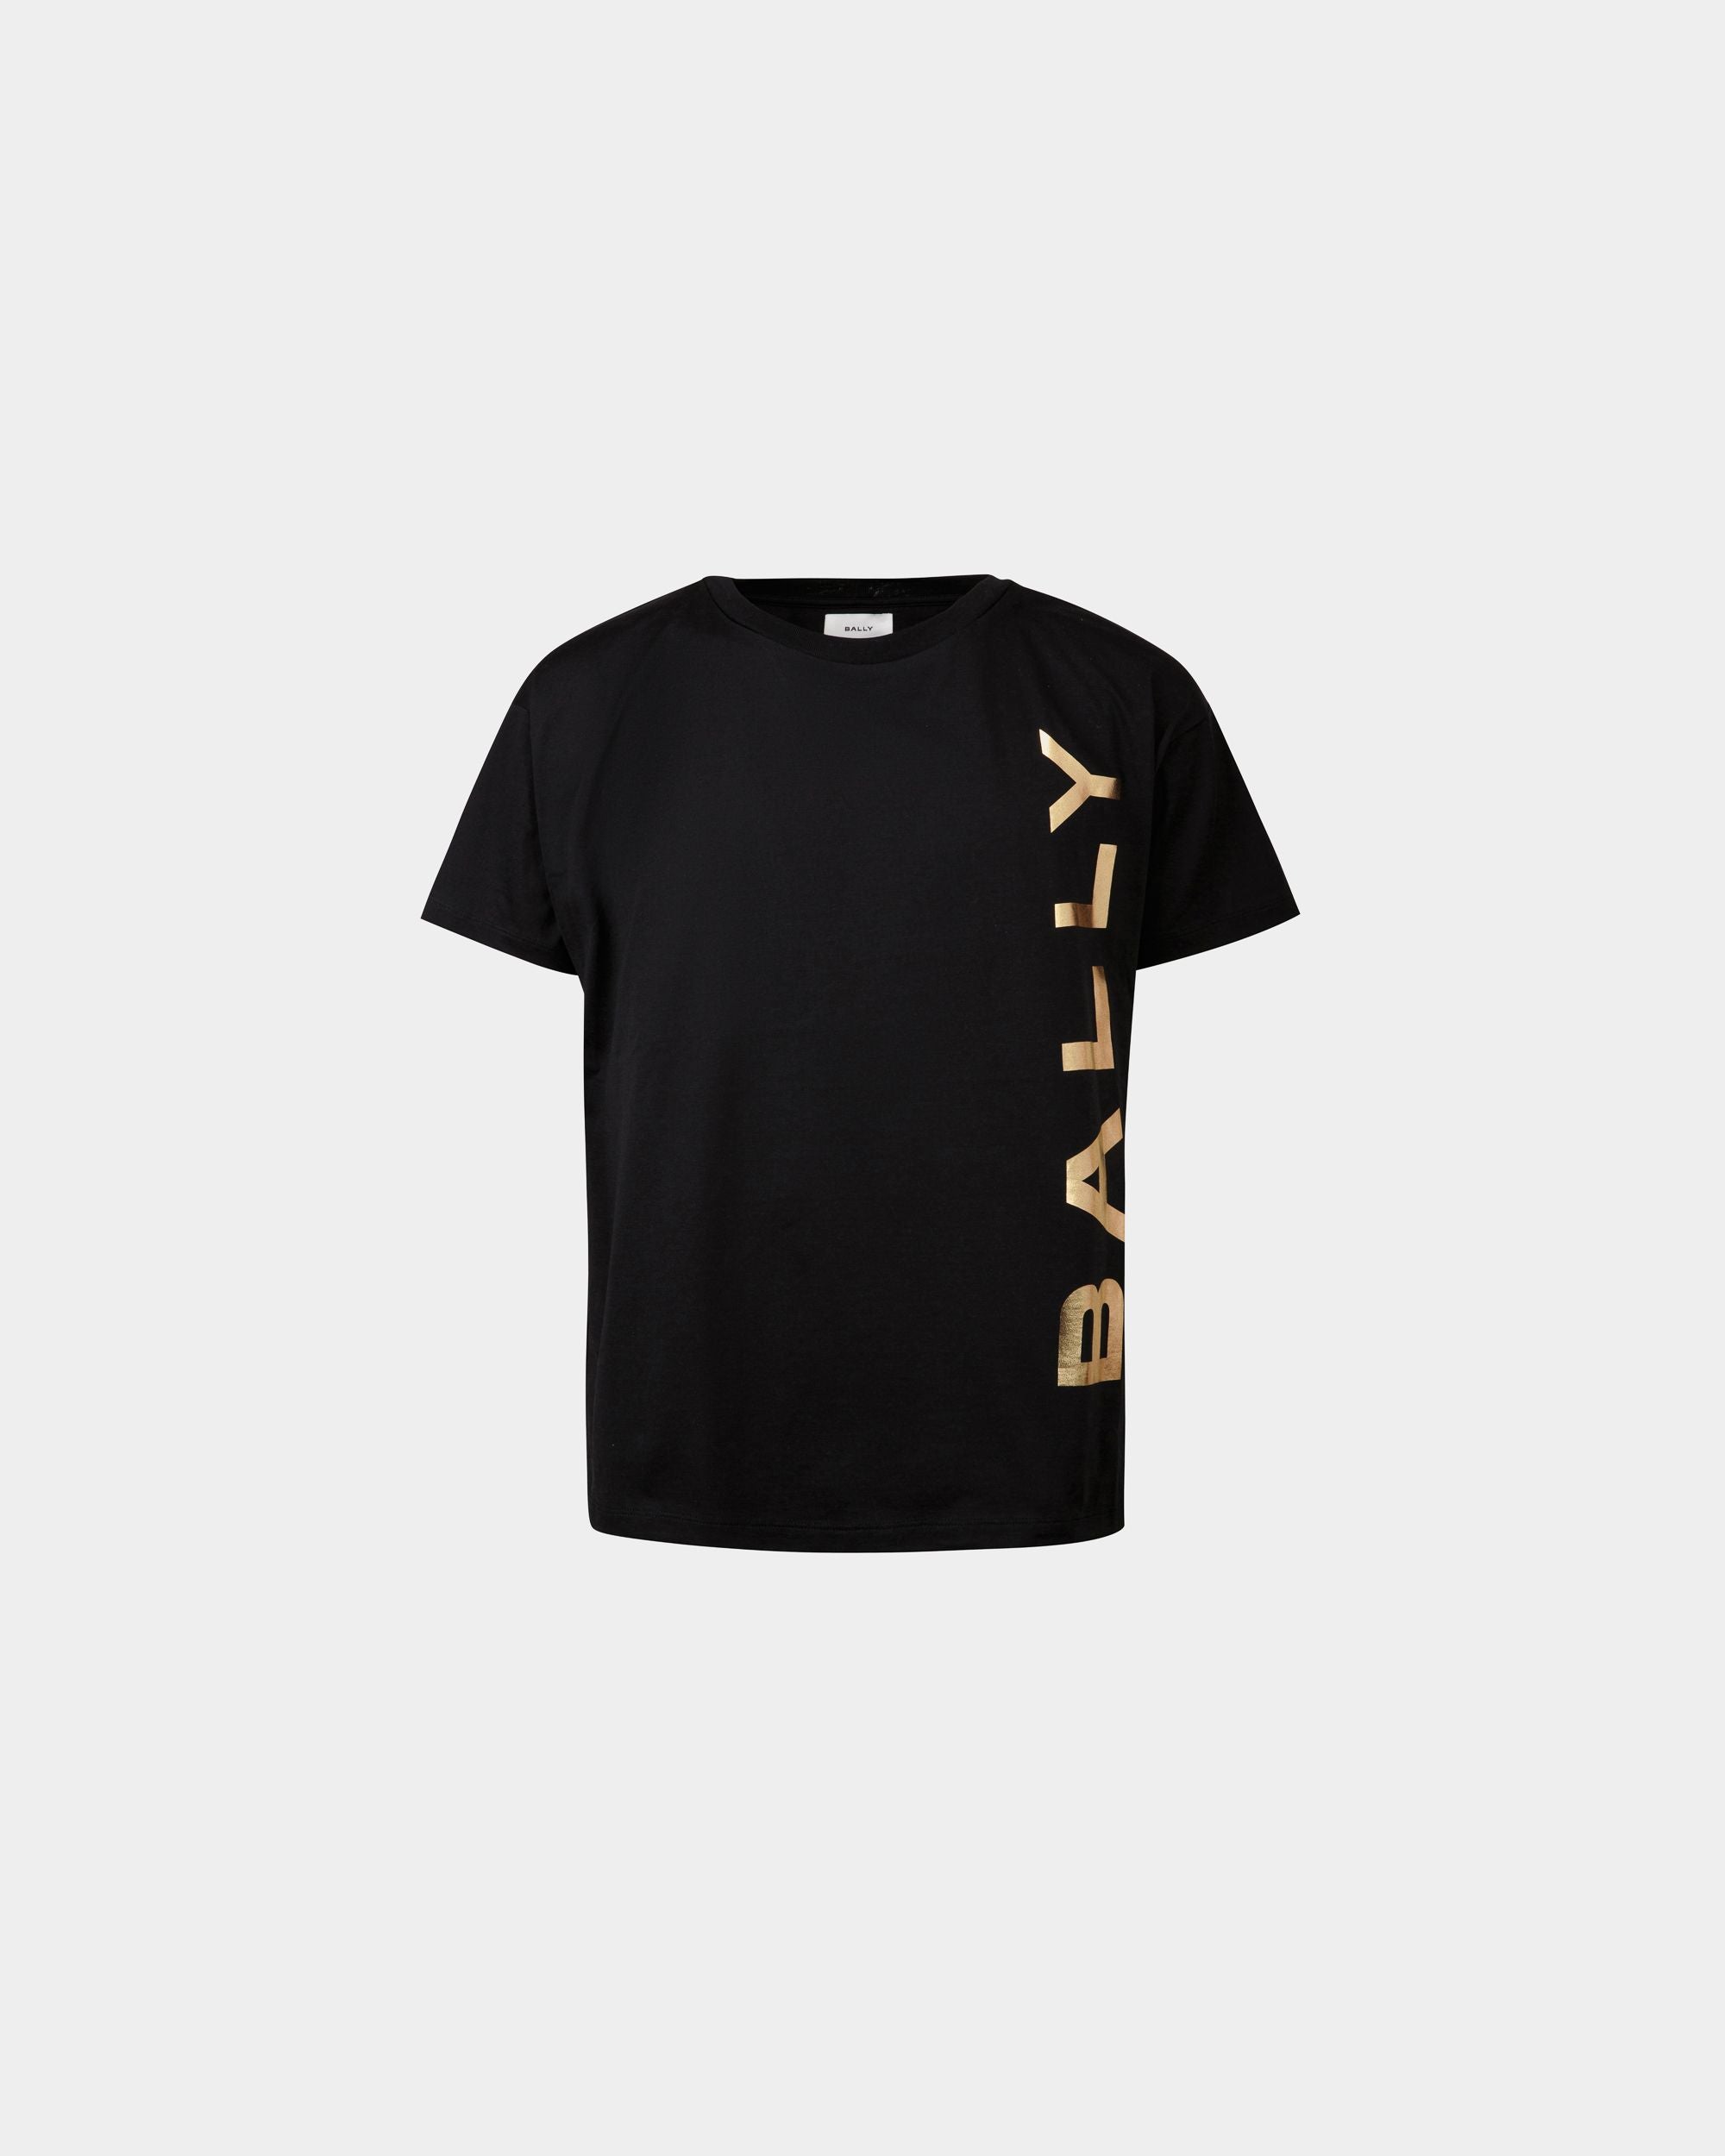 Herren-T-Shirt aus schwarzer Baumwolle | Bally | Still Life Vorderseite